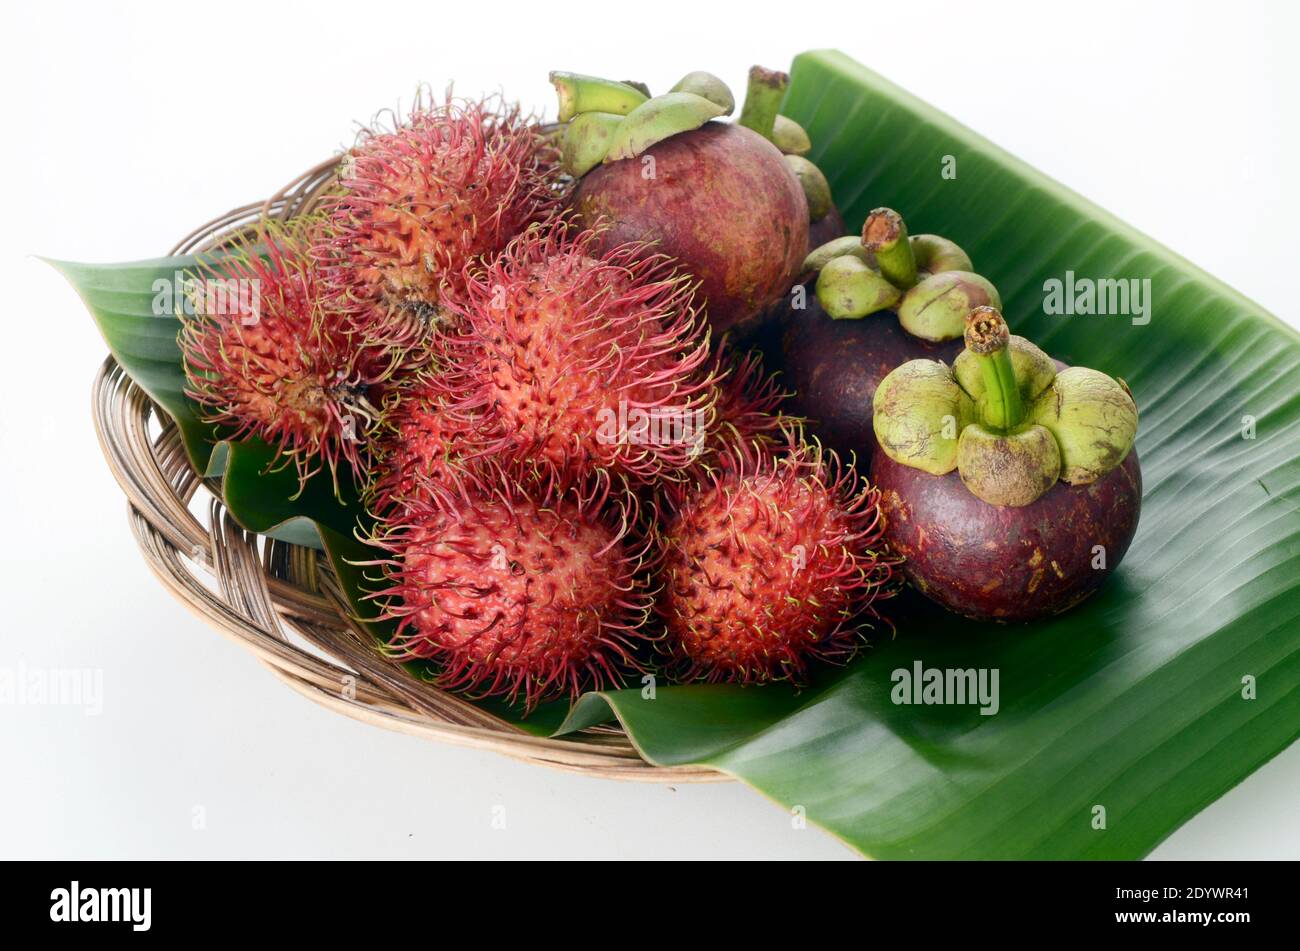 Mangostan und Rambutan auf Bananenblatt-Plater, Nephelium lappaceum Stockfoto